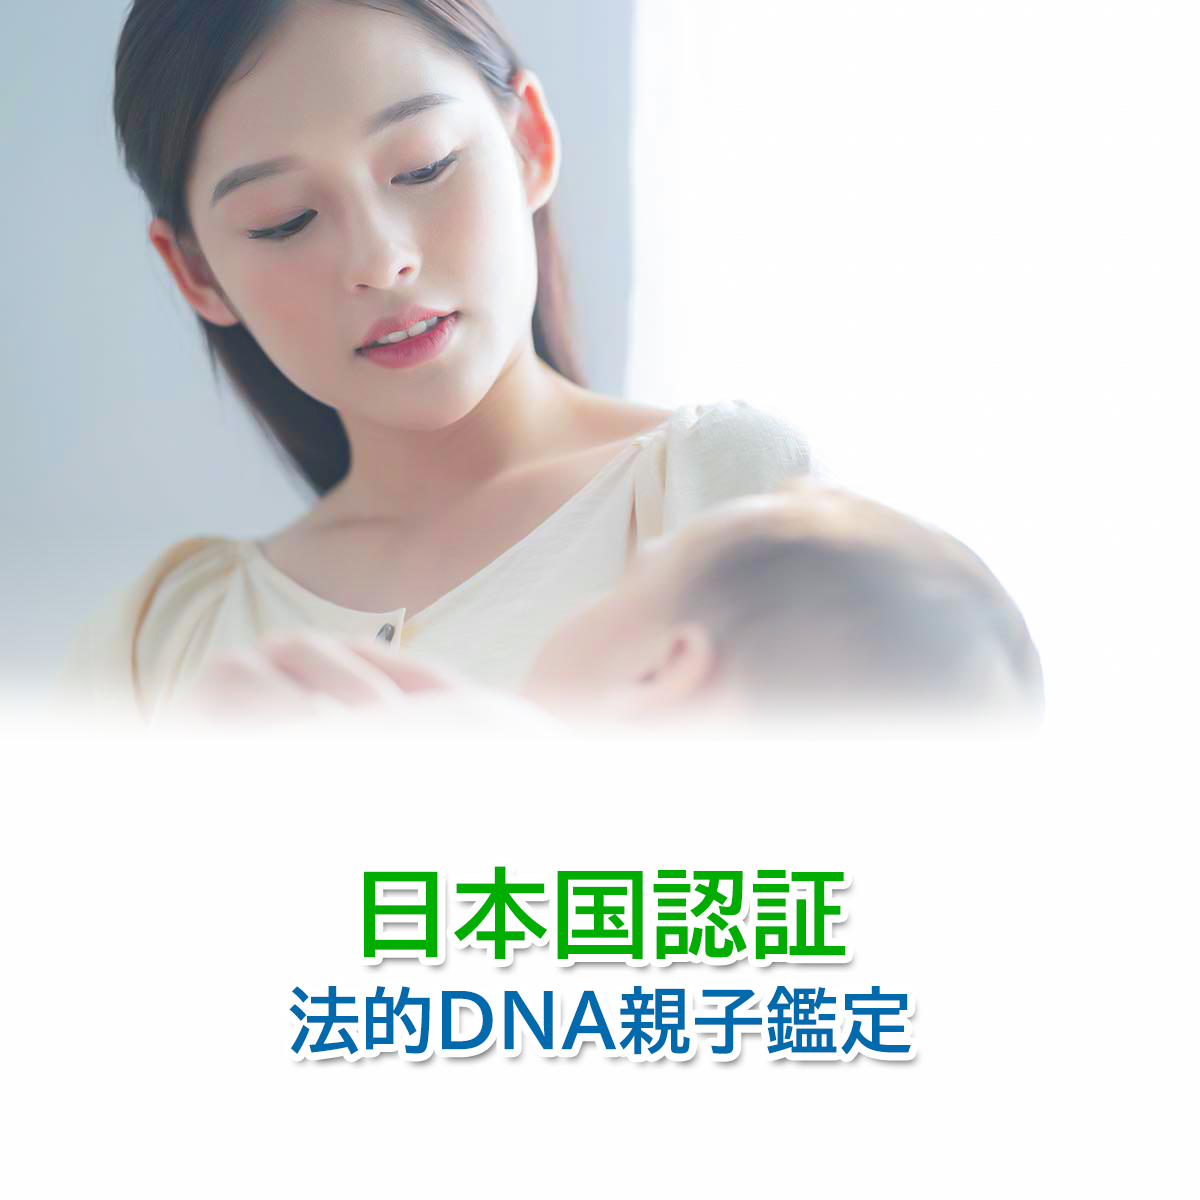 日本国認証 法的DNA親子鑑定